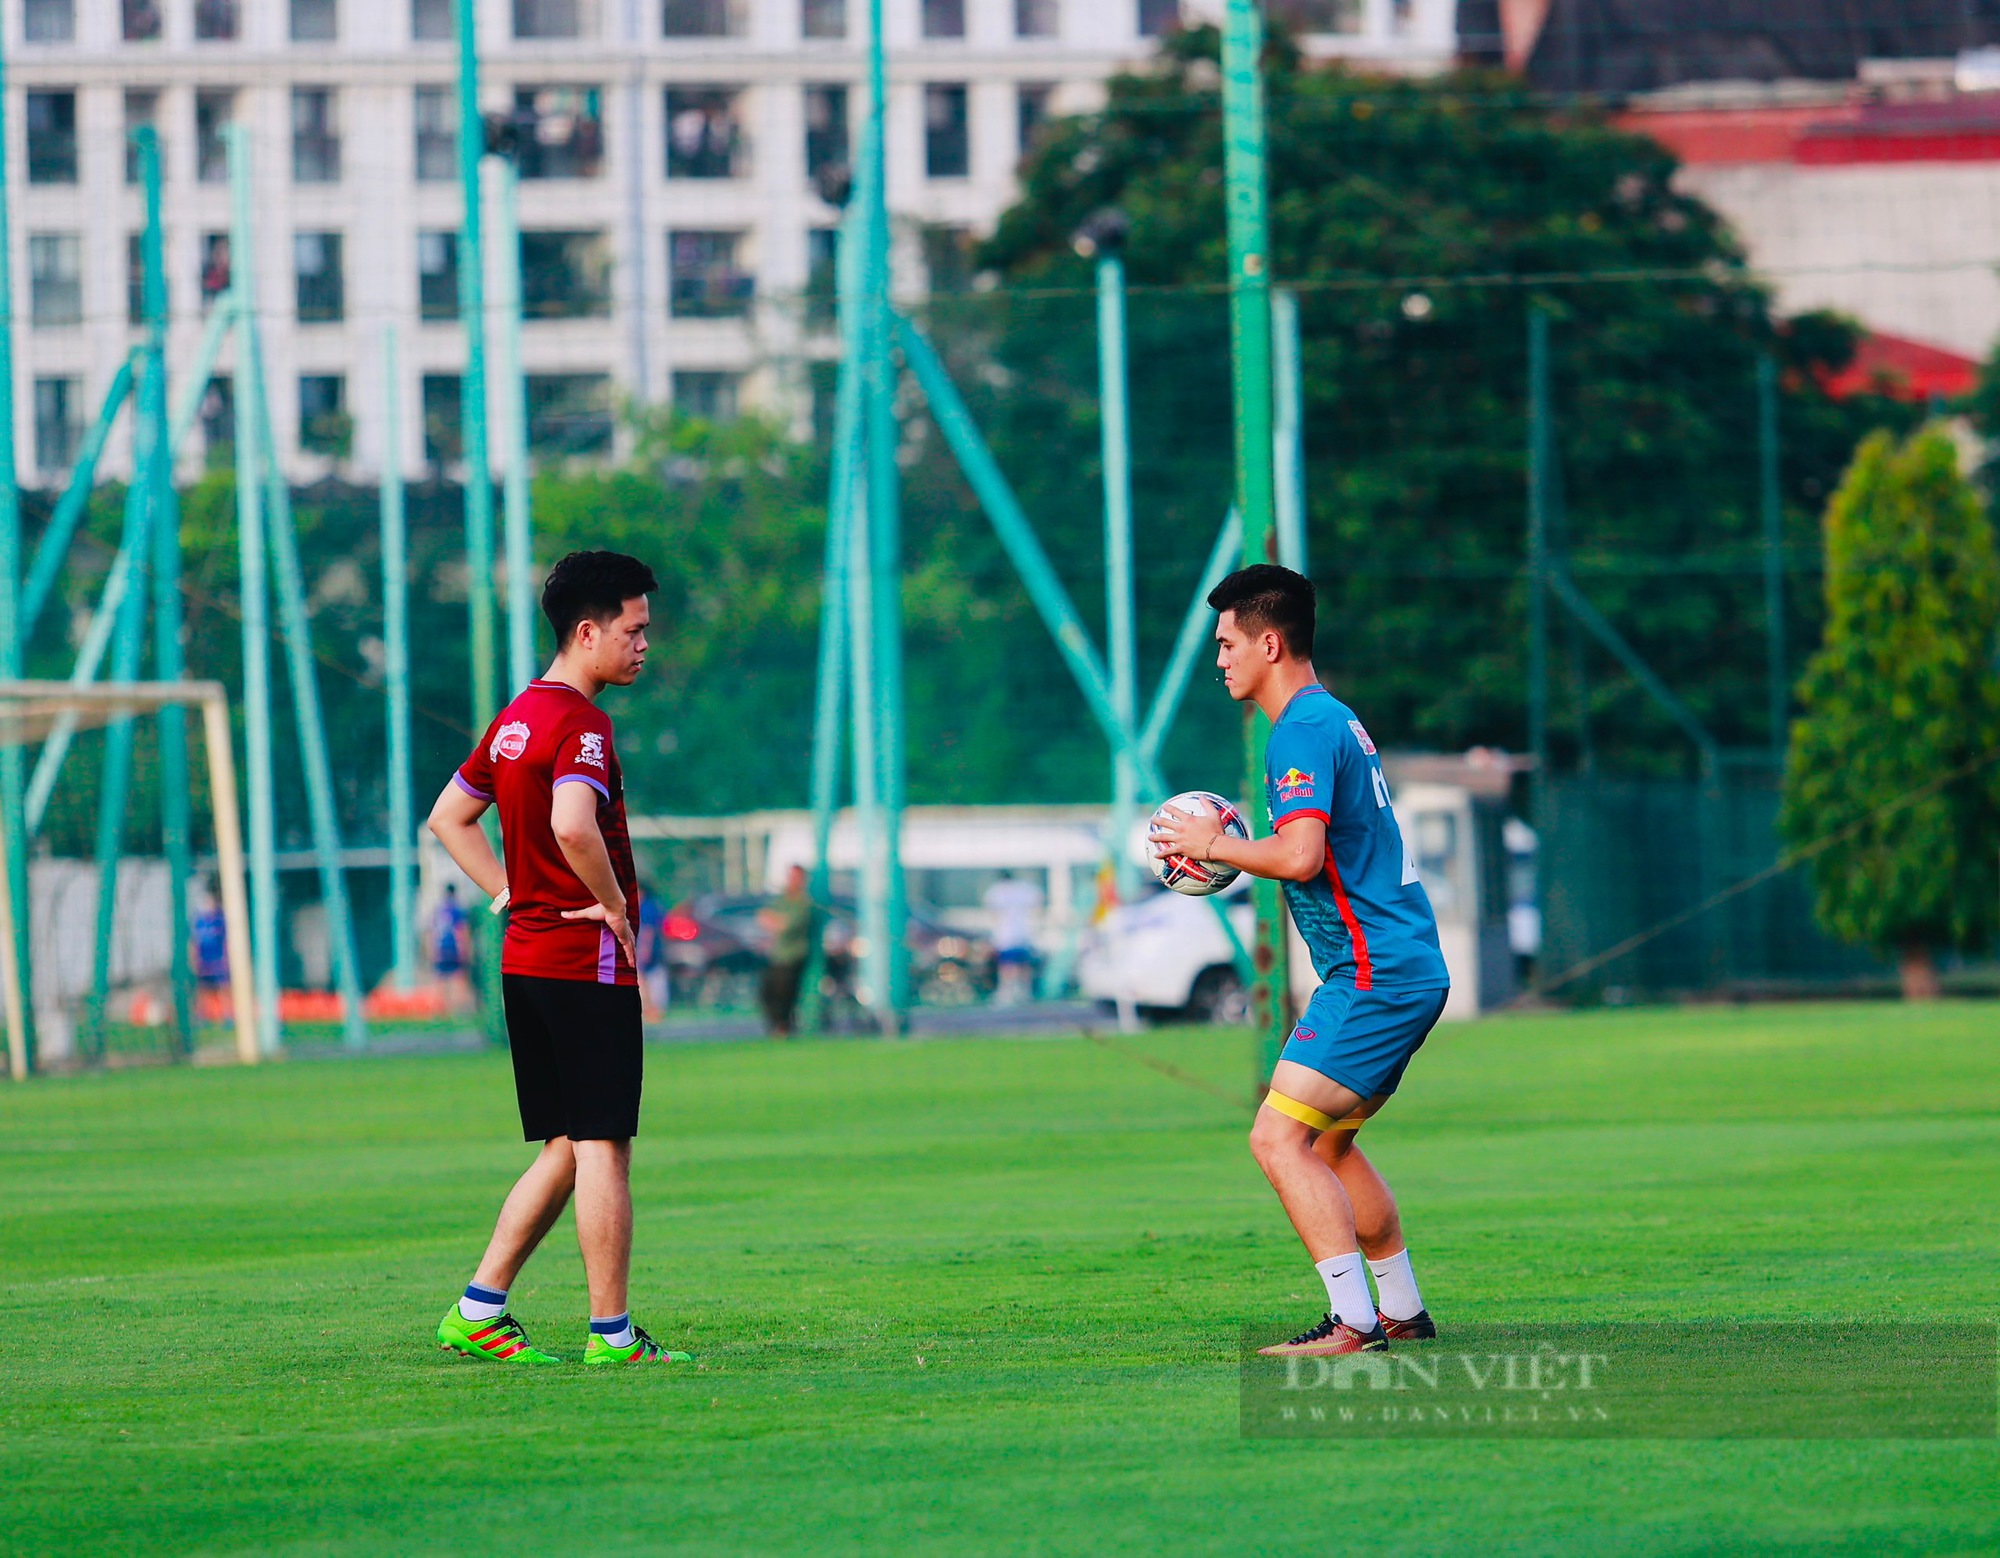 Thanh Bình thi đấu cùng Bùi Hoàng Việt Anh trong buổi tập của ĐT Việt Nam - Ảnh 3.